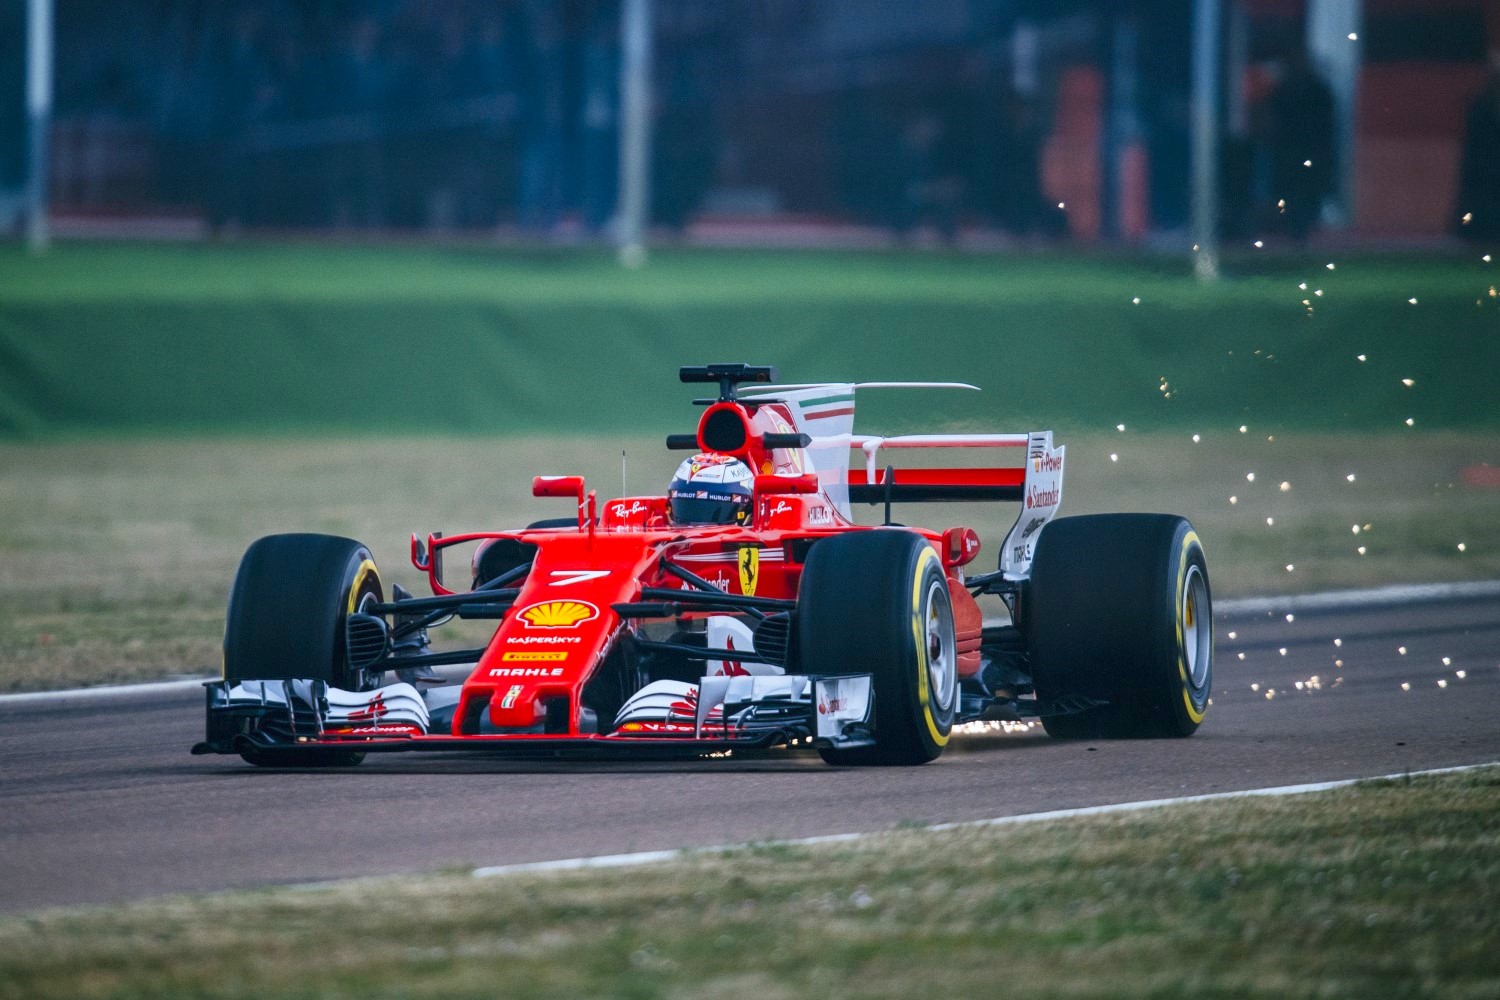 Raikkonen in the new Ferrari